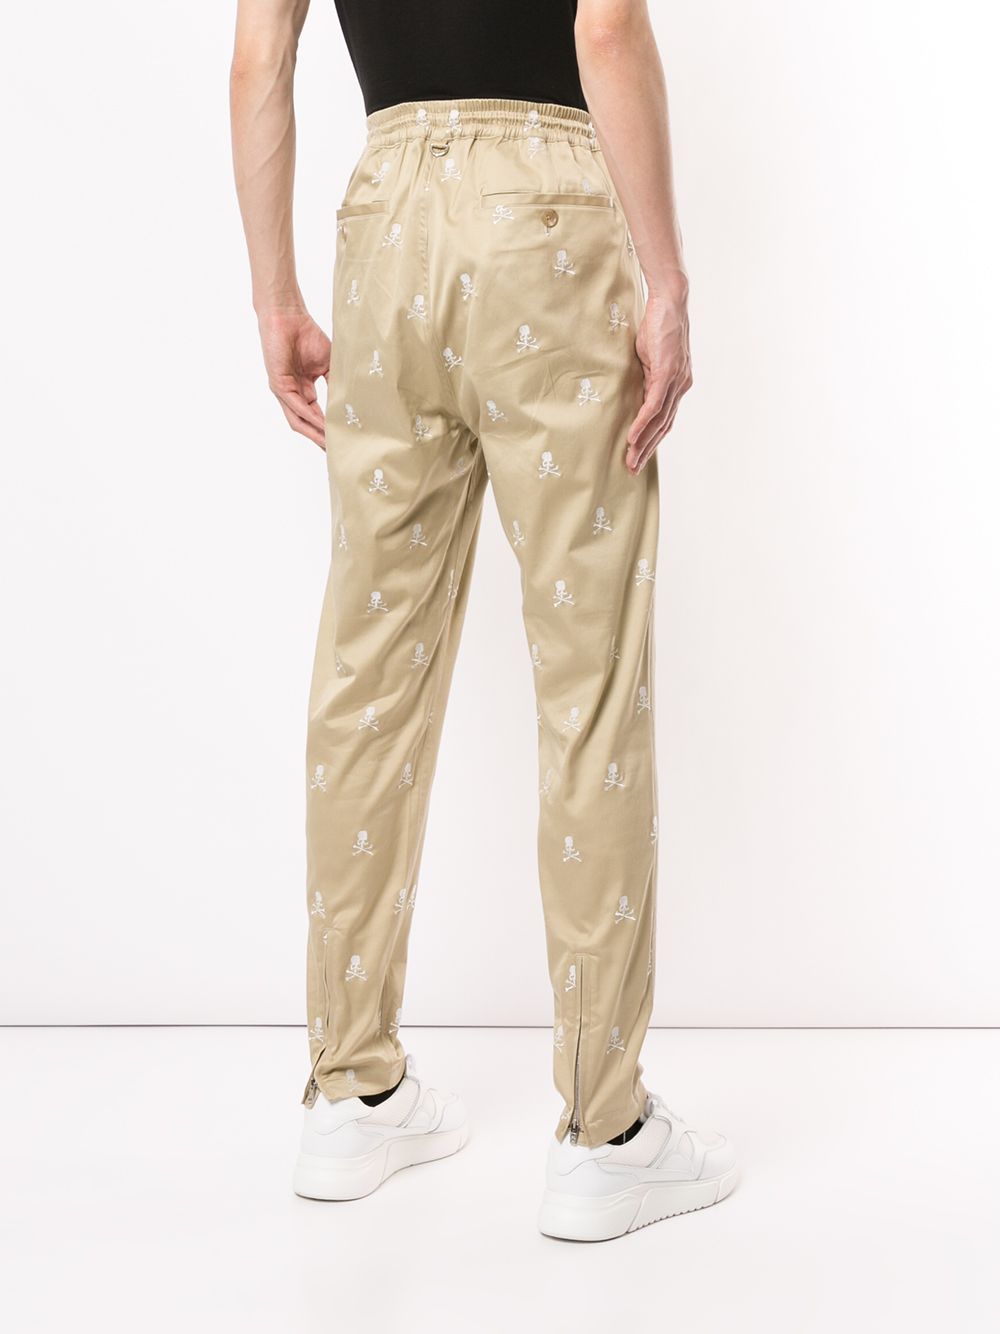 фото Mastermind world брюки с кулиской и монограммой